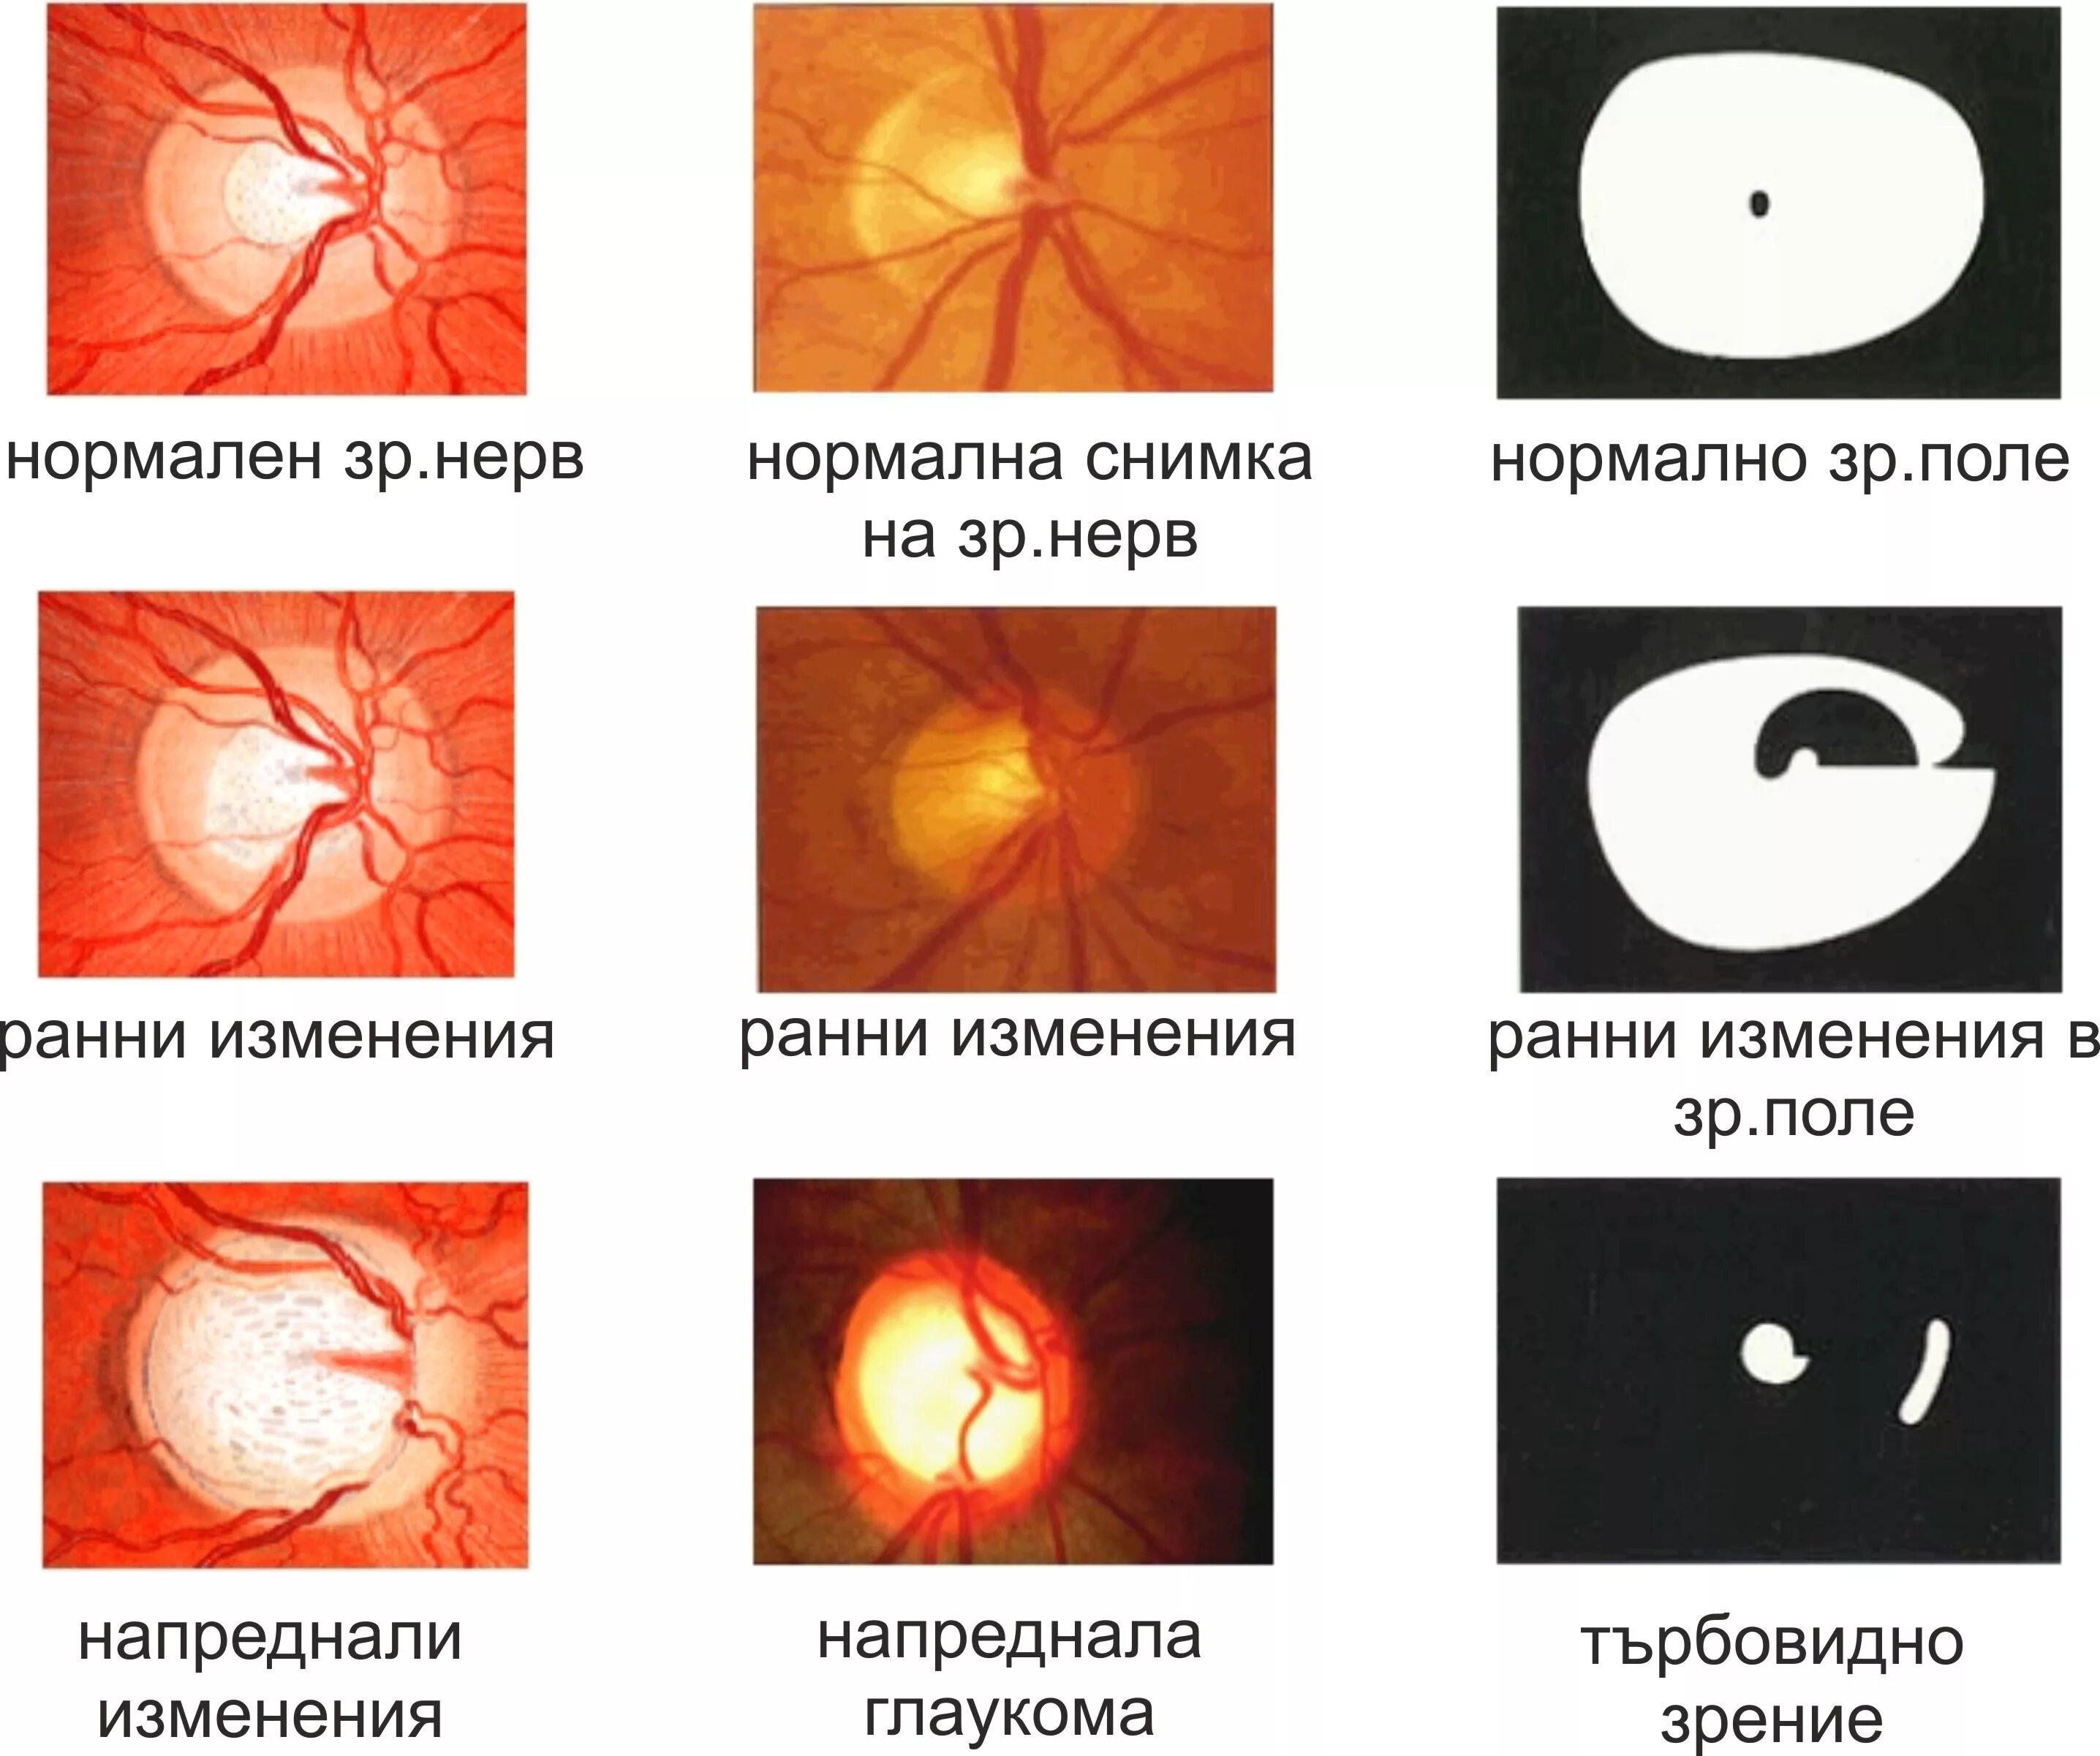 Глаукома латынь. Глаукома поля зрения. Стадии глаукомы.